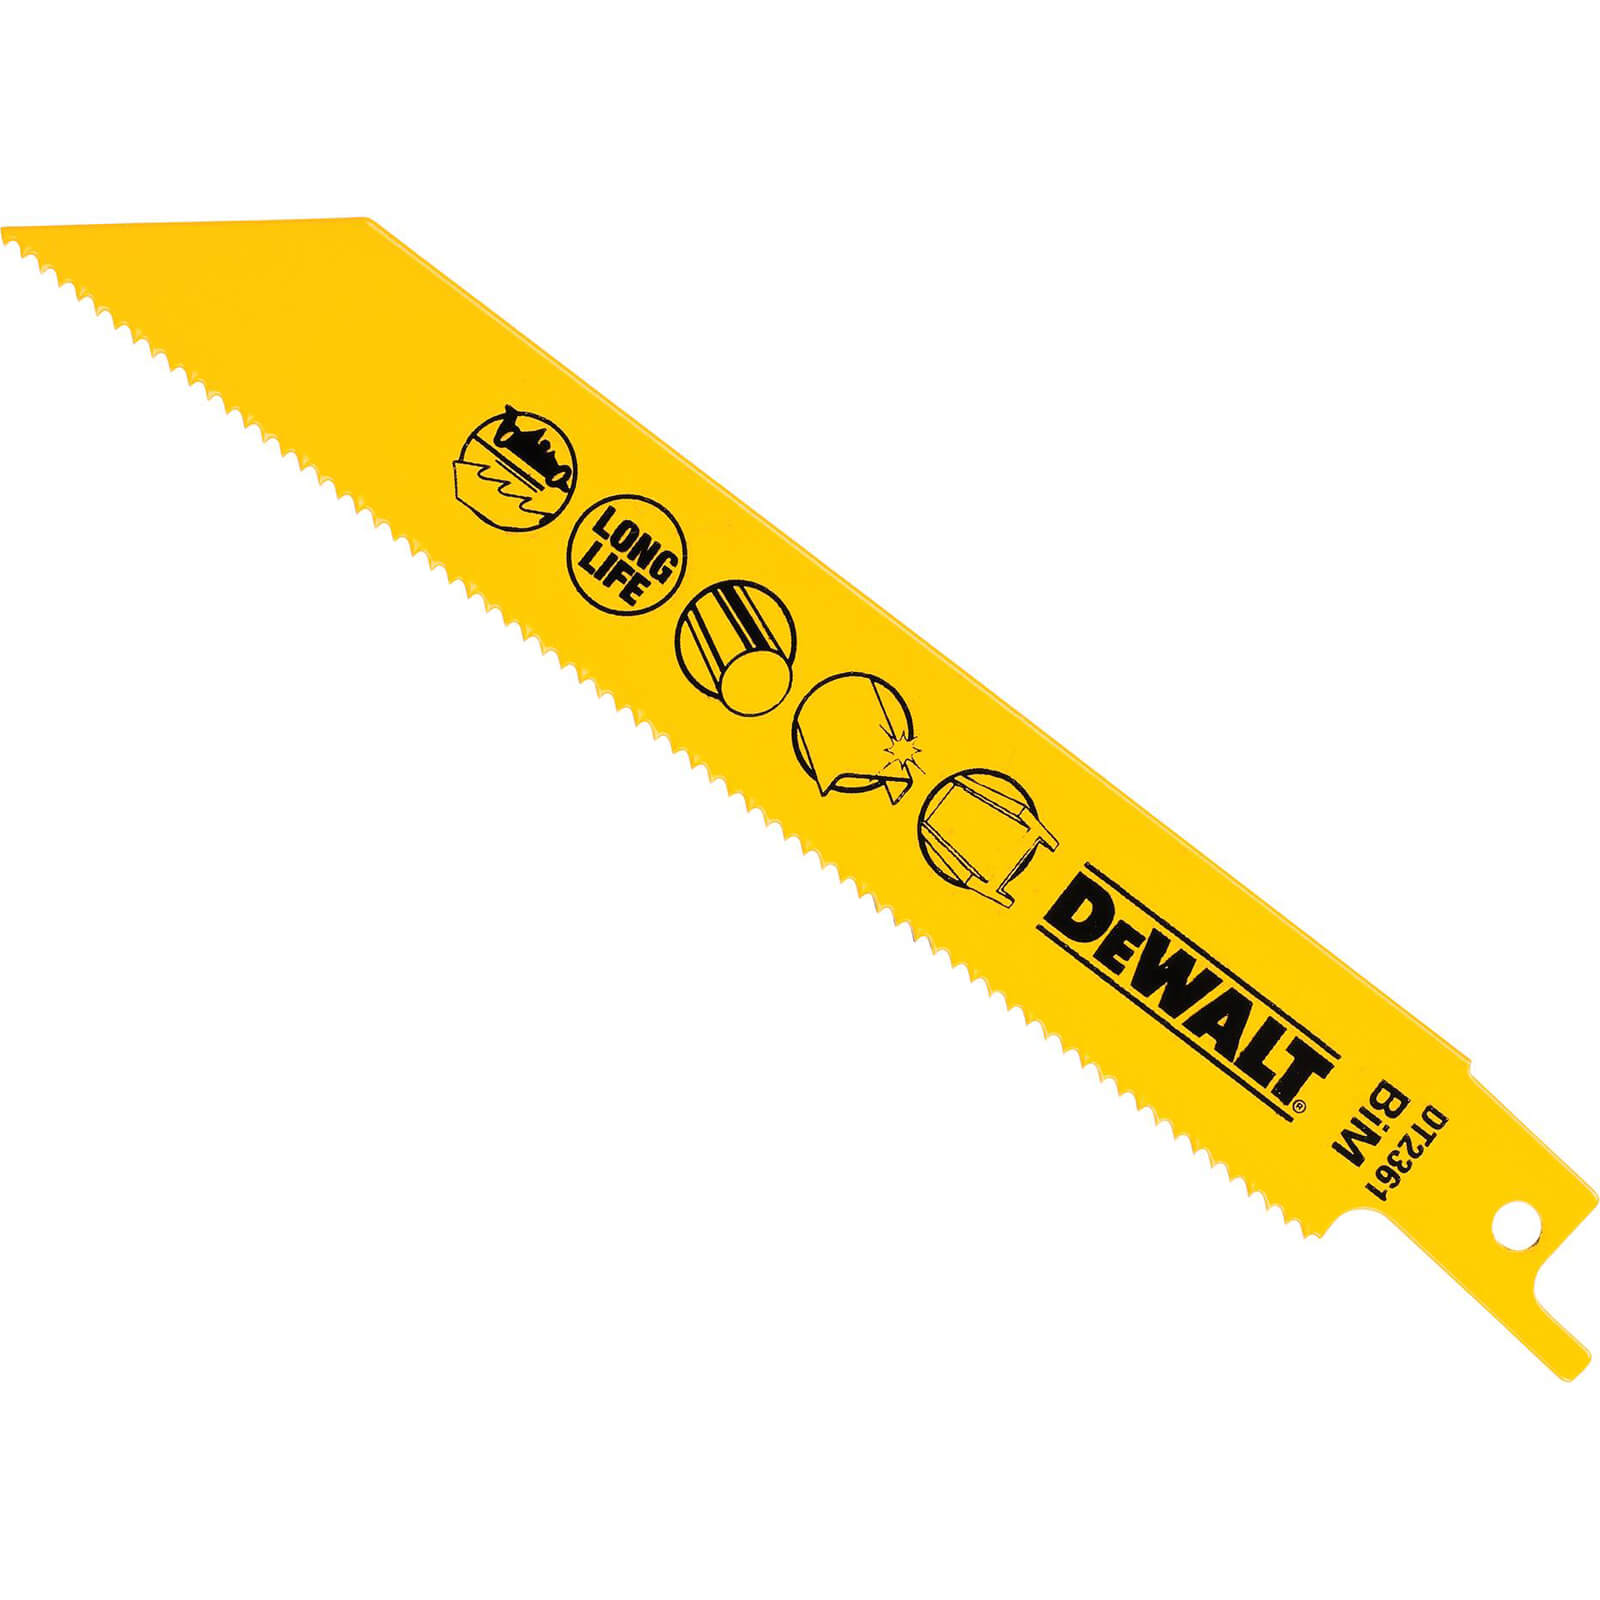 DeWalt DT2361 Bi Metal Reciprocating Saw Blade for Fast Cuts Metals / Sheet Metals 152mm